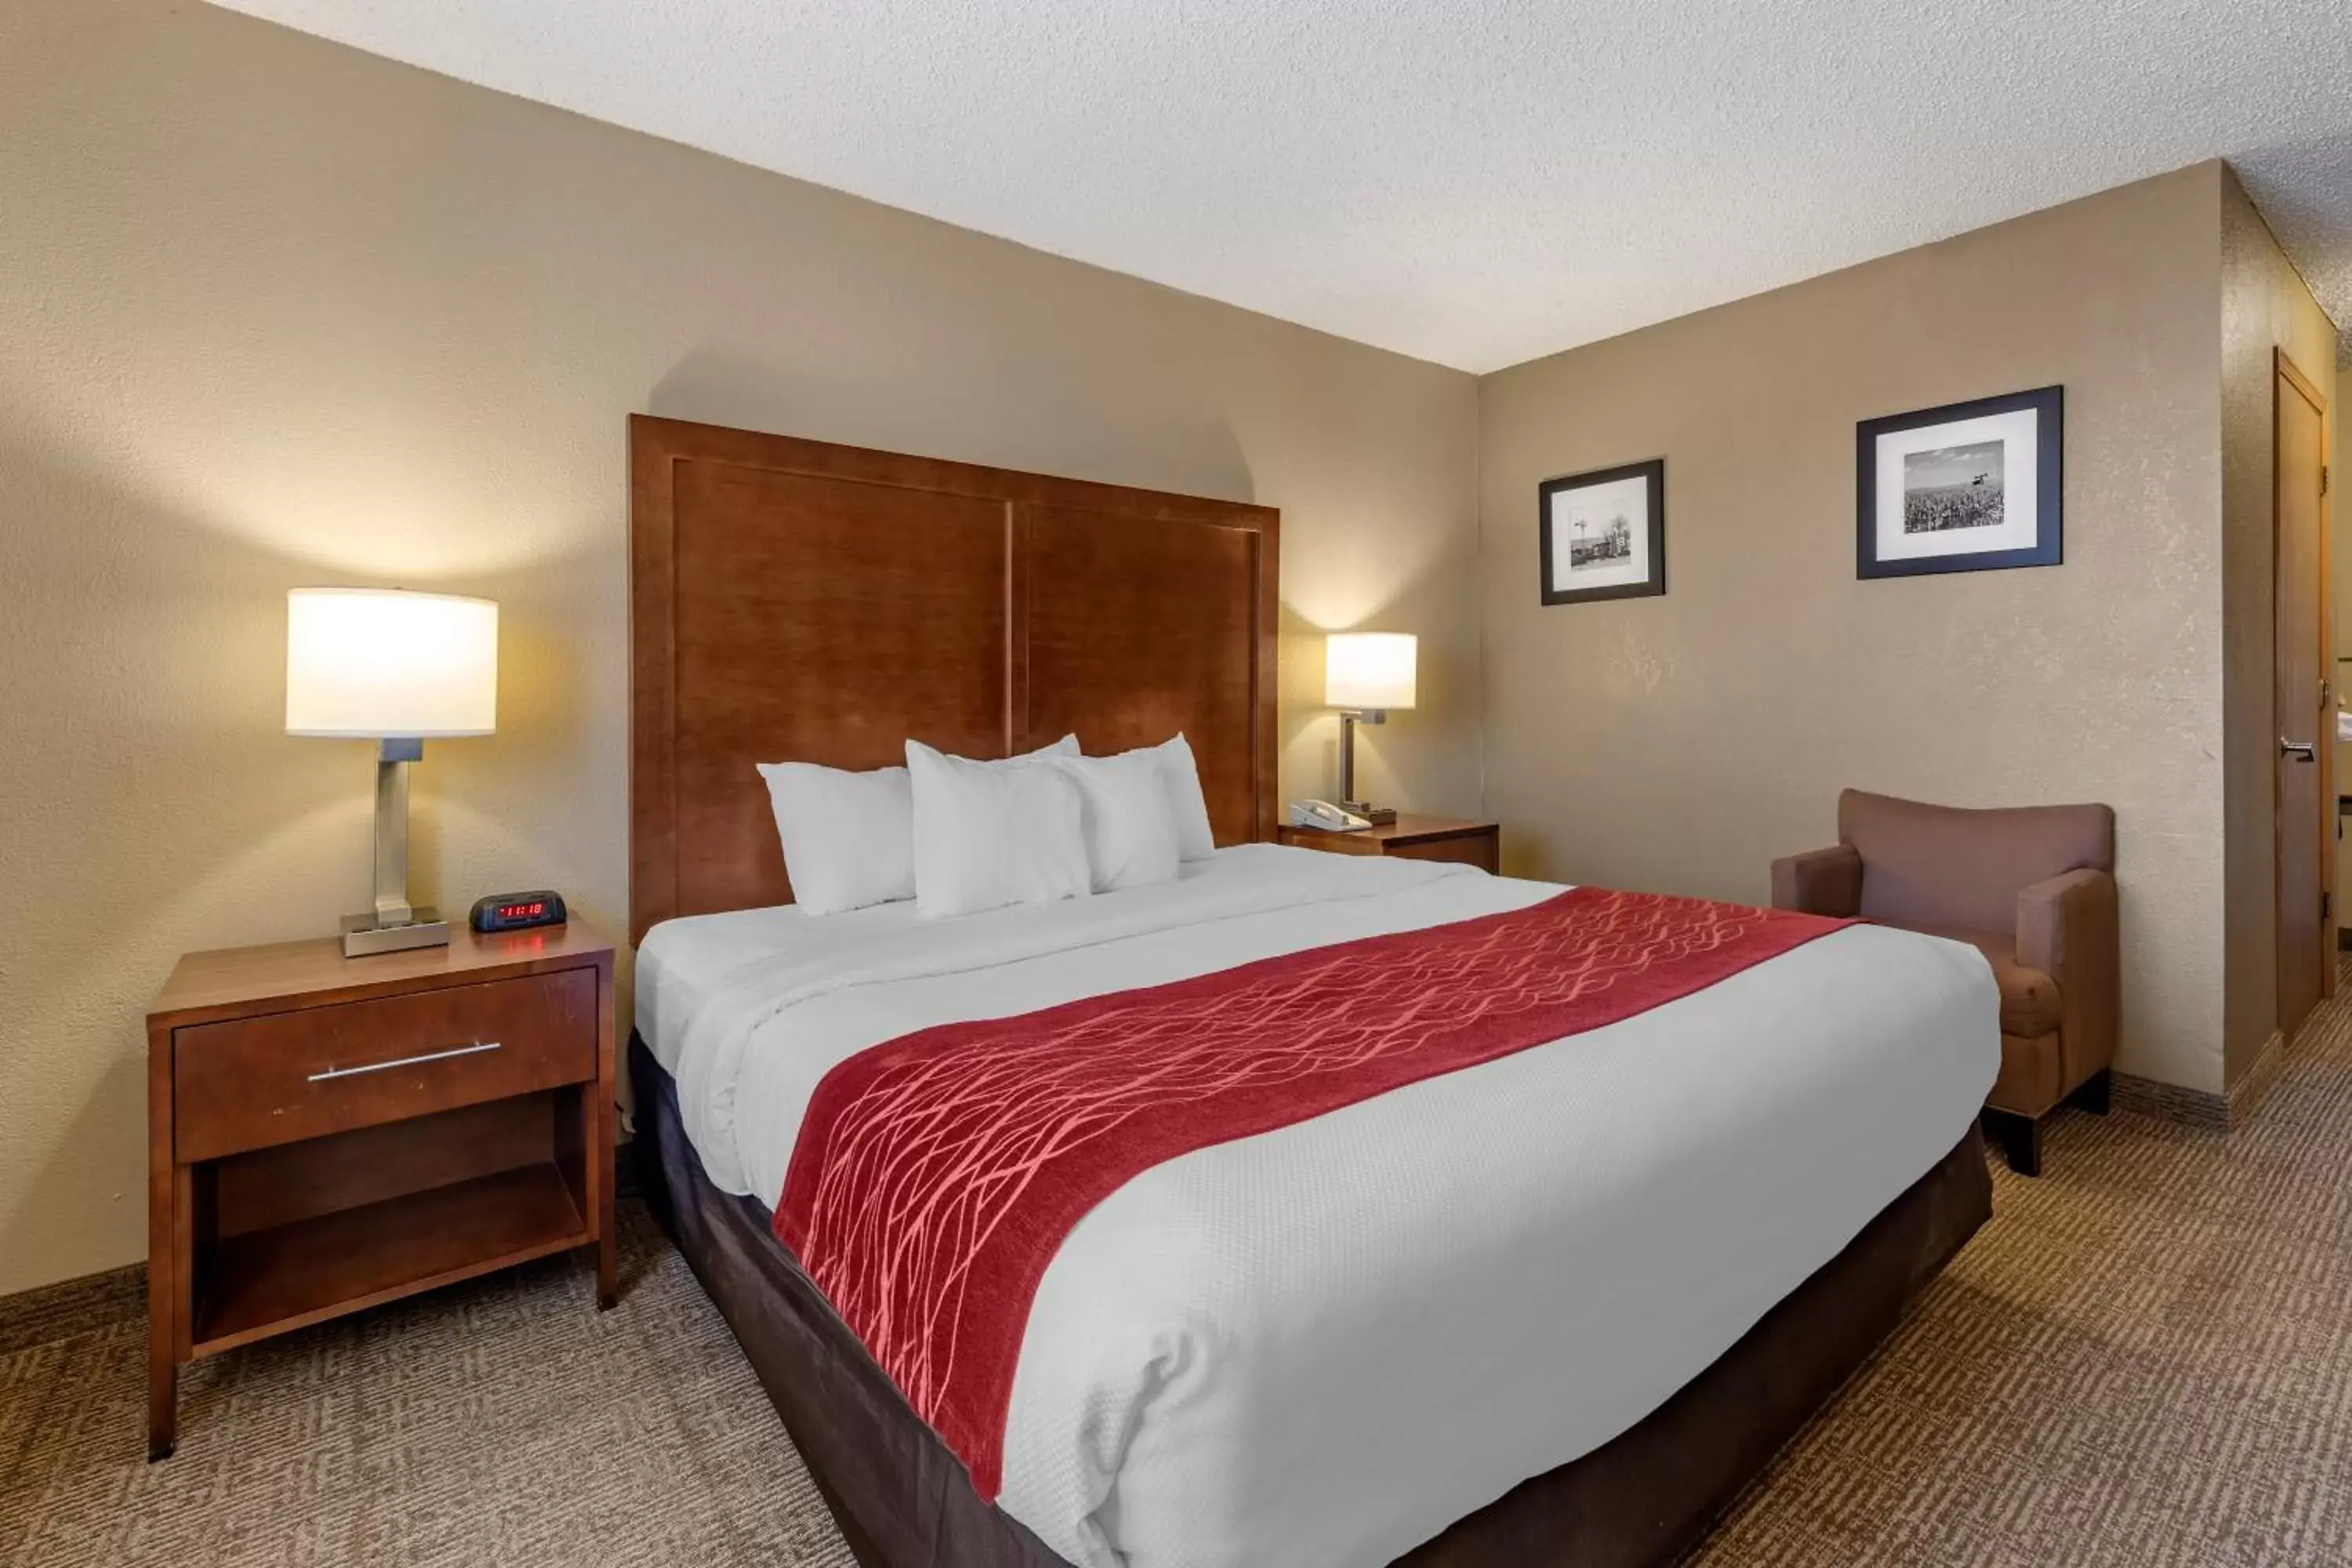 Bedroom, Bed in Comfort Inn & Suites Hays I-70